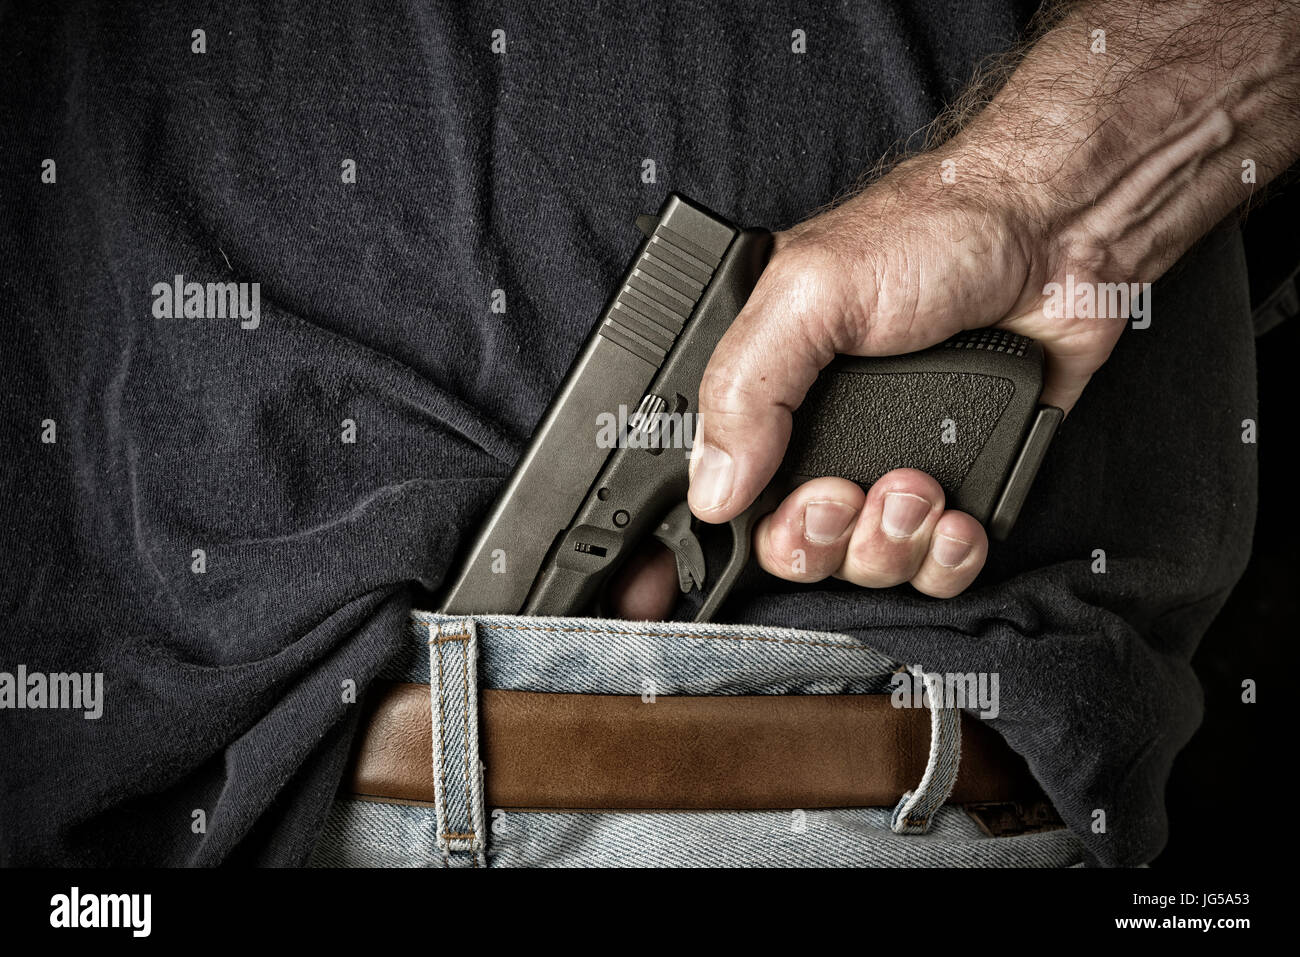 Un homme avec un pistolet dans sa ceinture saisit la poignée en préparation pour tirer l'arme Banque D'Images